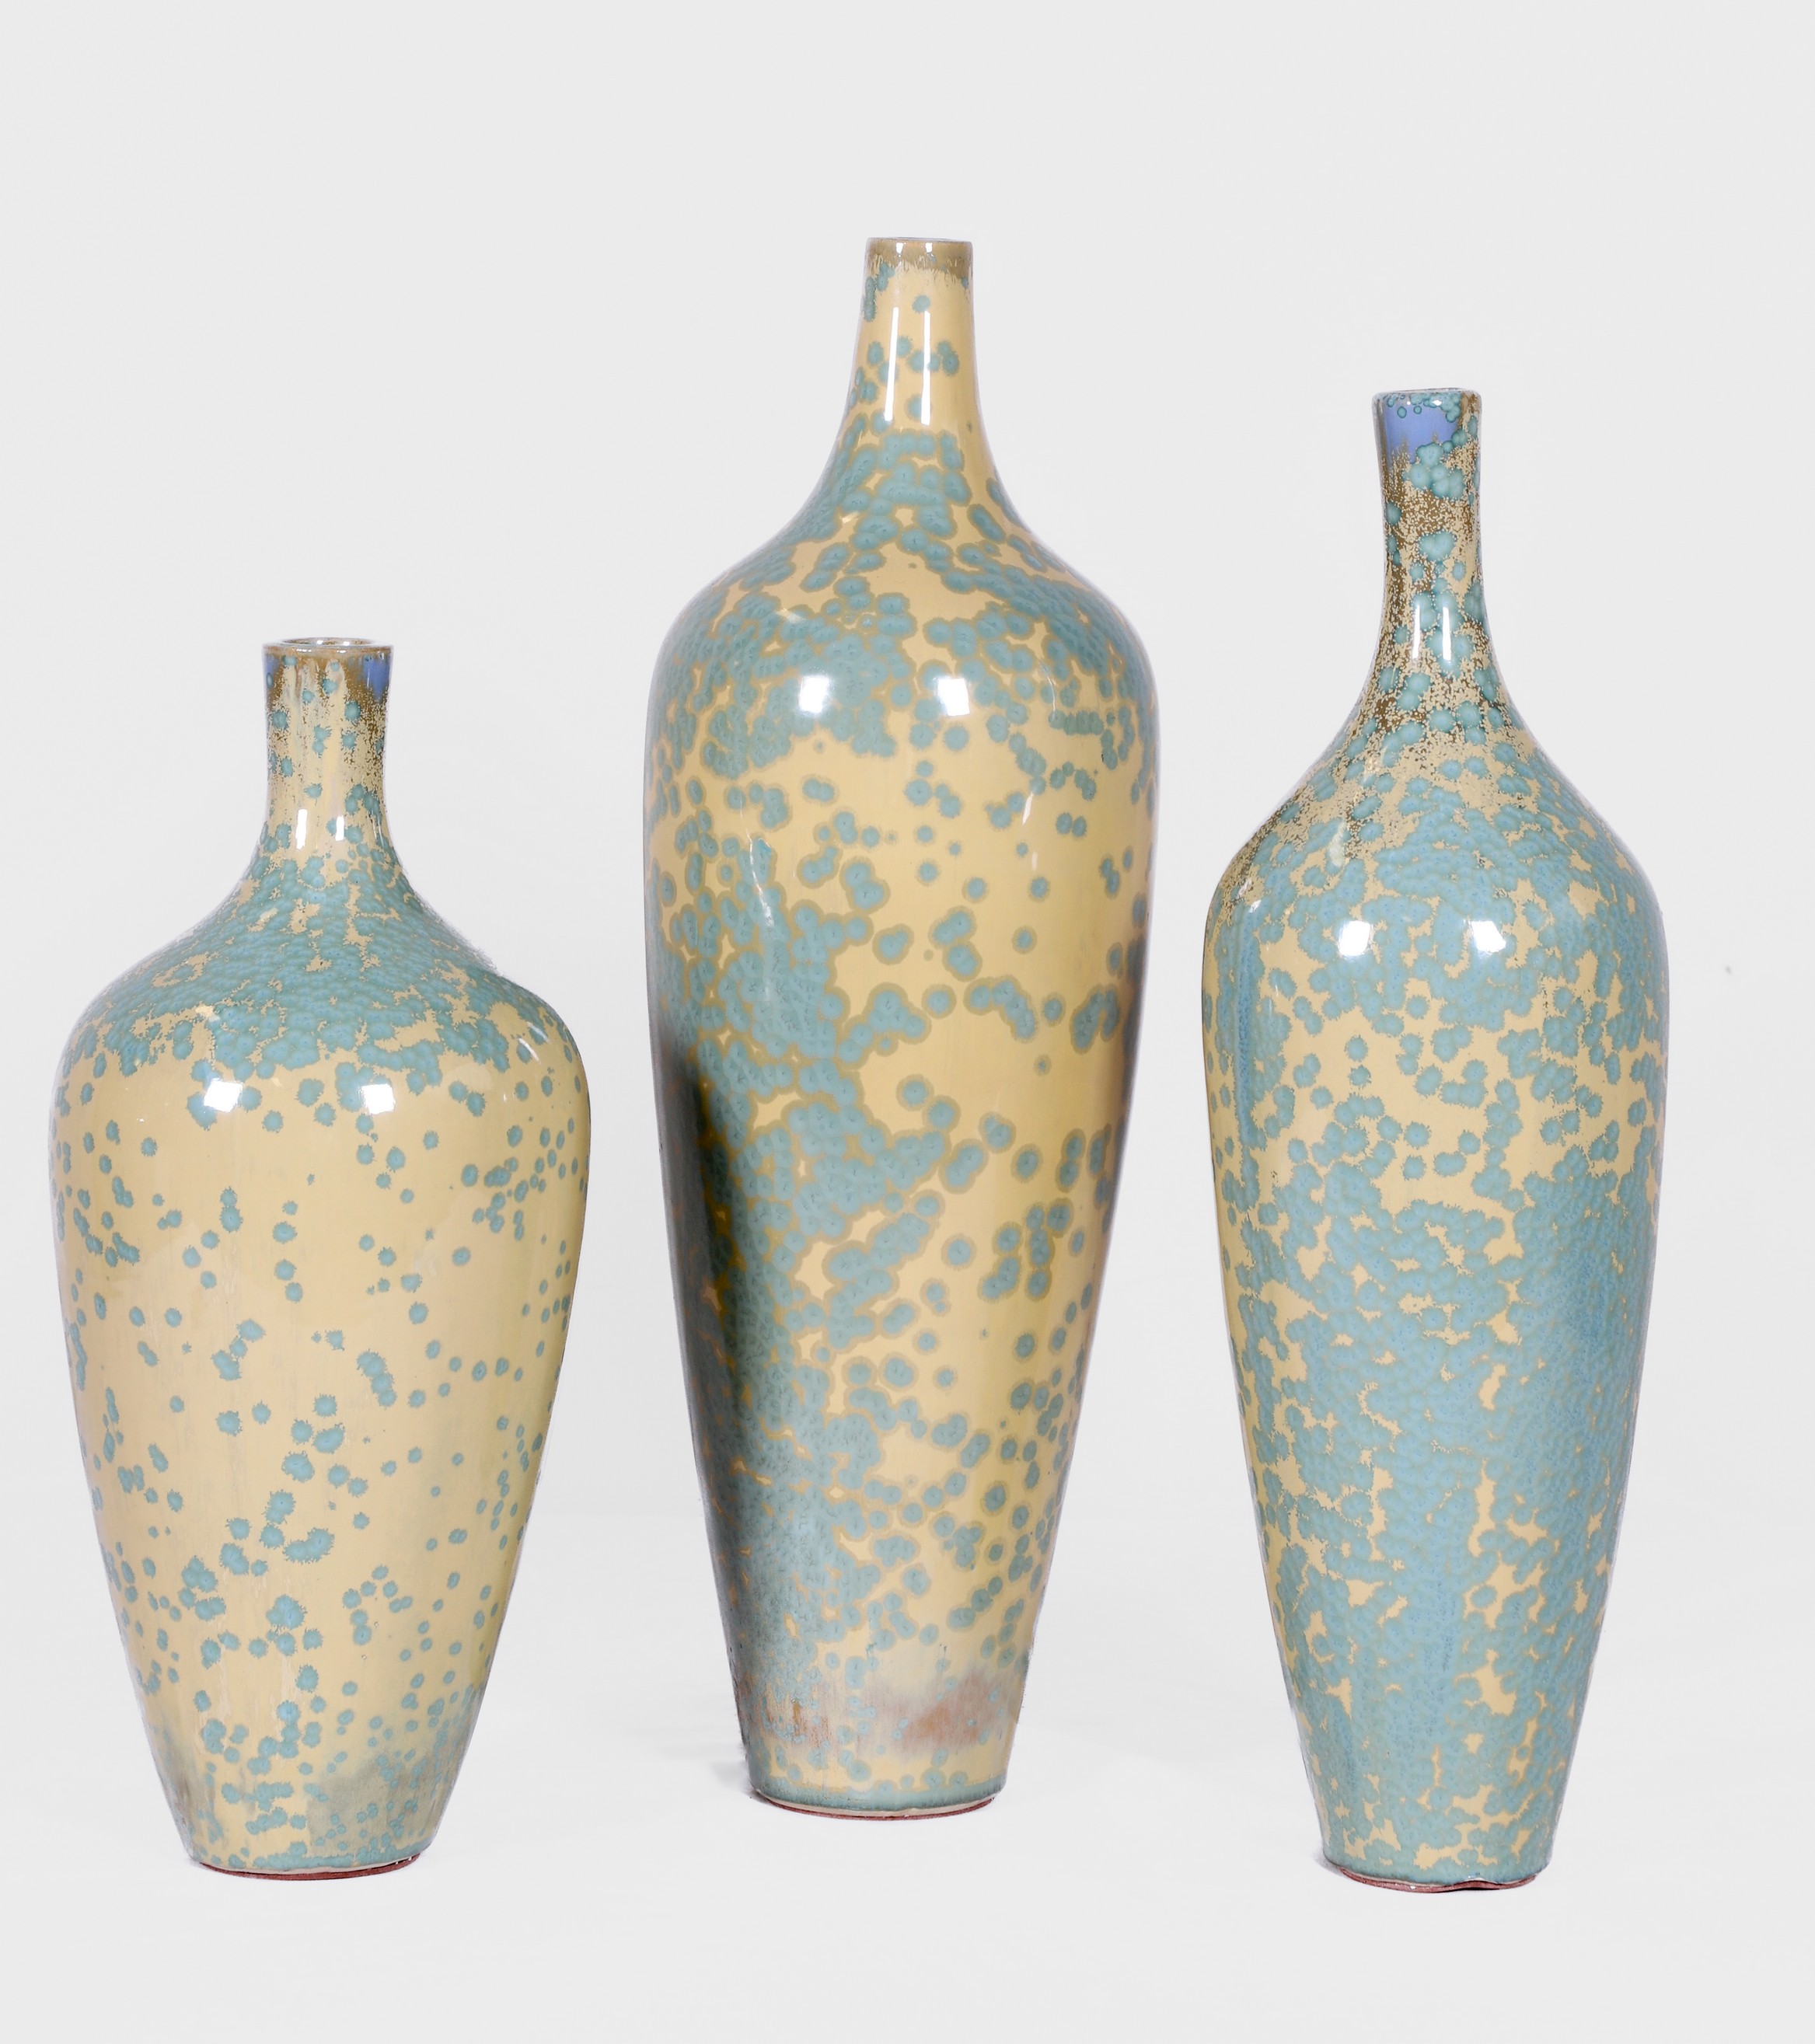 (3) Contemporary glazed ceramic